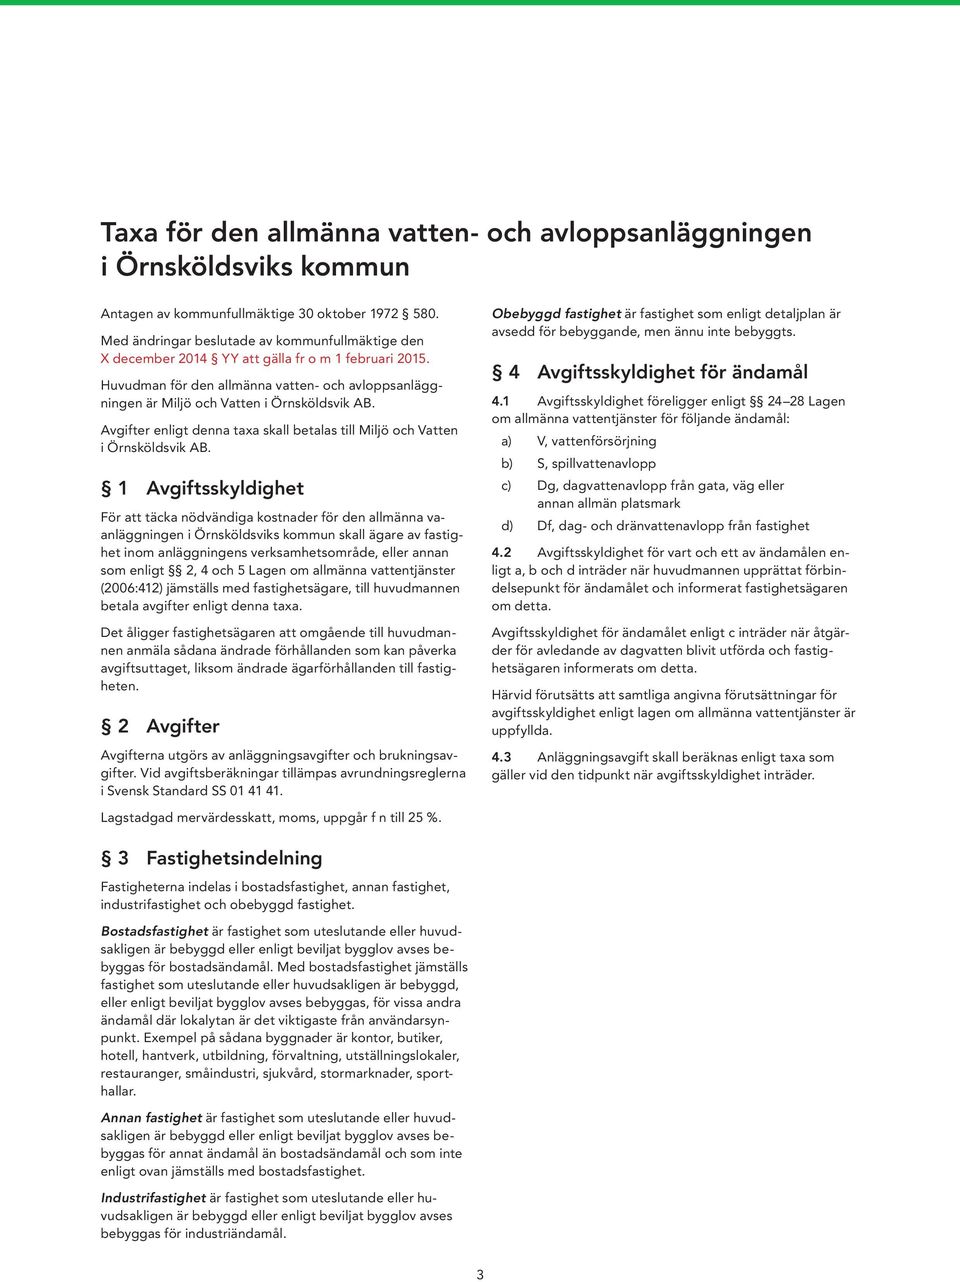 Avgifter enligt denna taxa skall betalas till Miljö och Vatten i Örnsköldsvik AB.